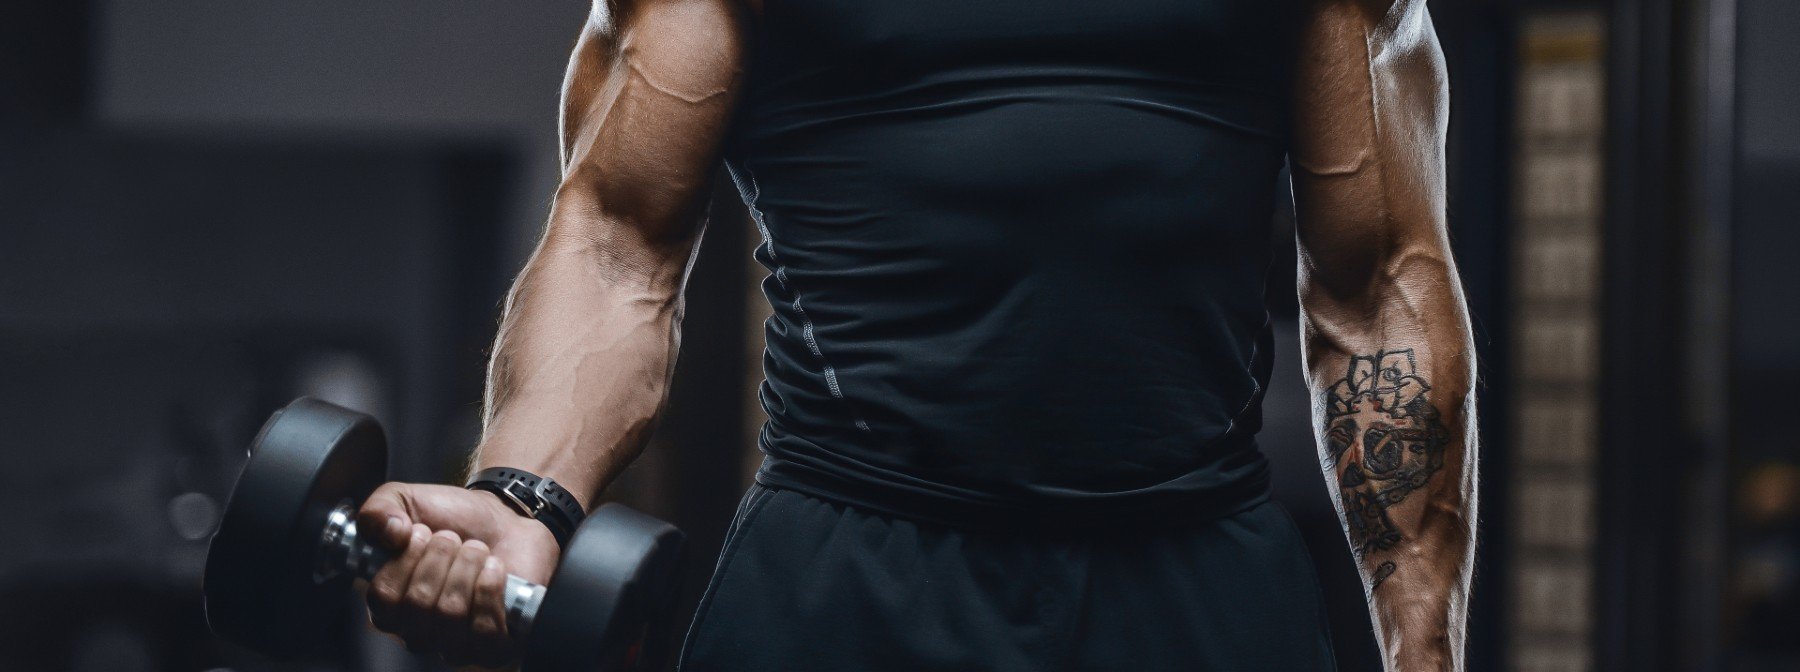 Treino para braços: 7 melhores exercícios de tríceps e bíceps - Minha Vida